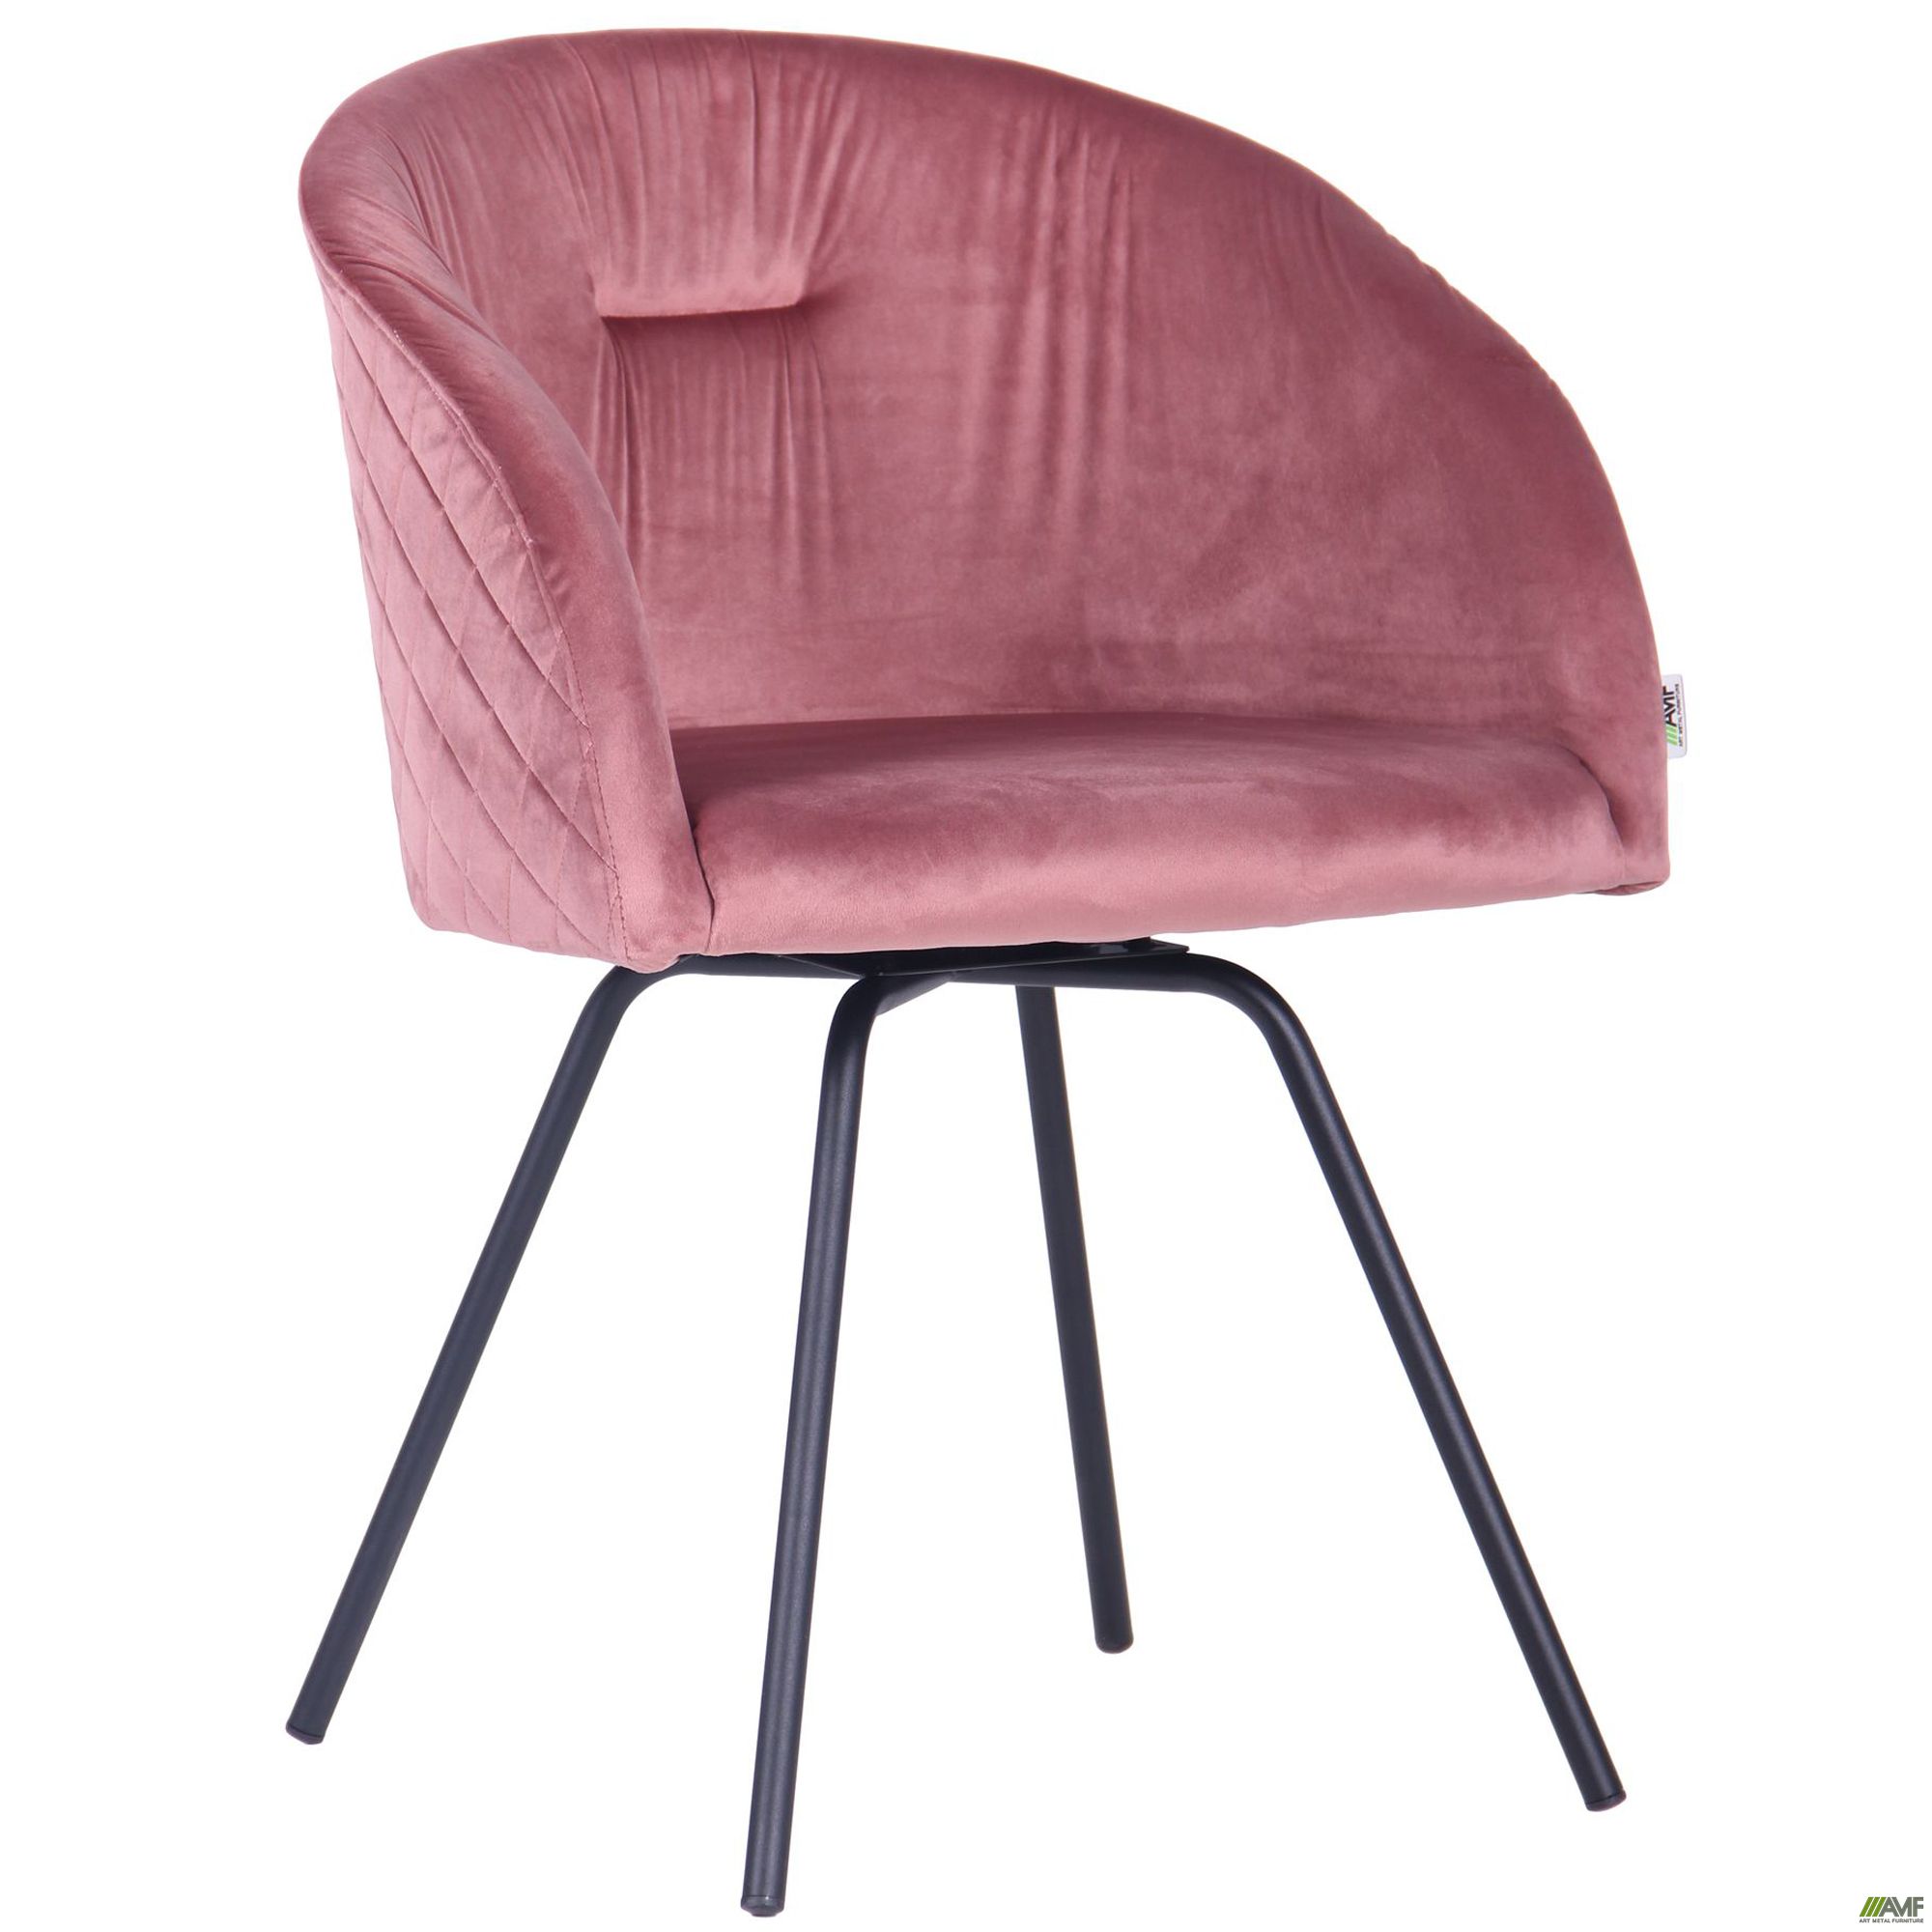 Фото 1 - Кресло поворотное Sacramento черный/велюр розовый антик 